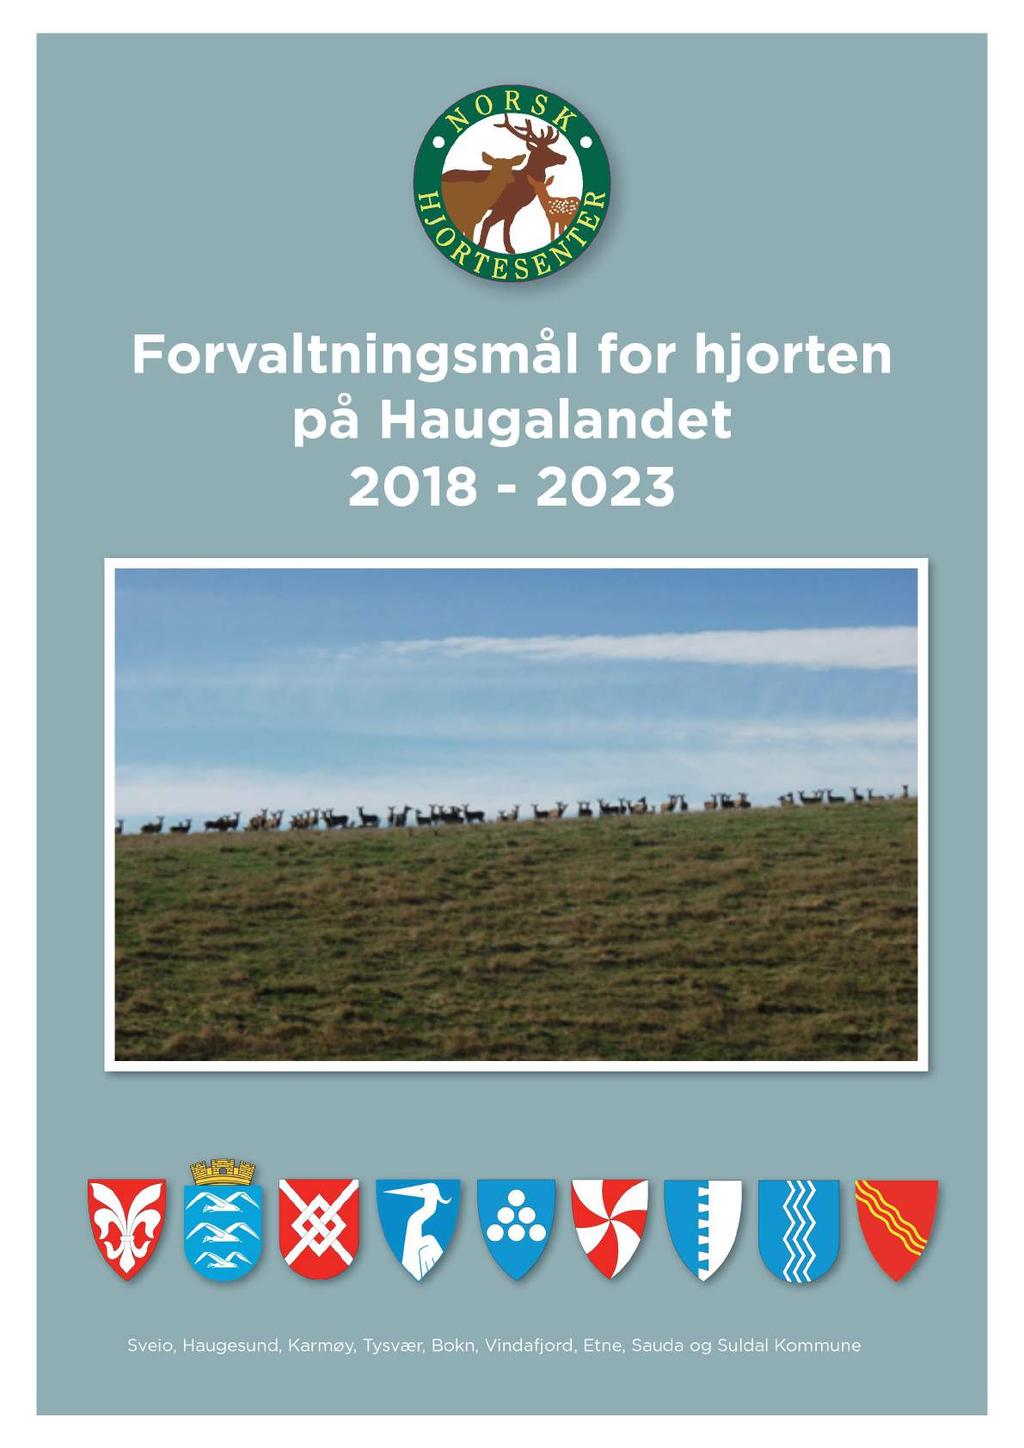 Forval tni ngsmål for hjorten på H augal andet 2018-2023 Sveio,